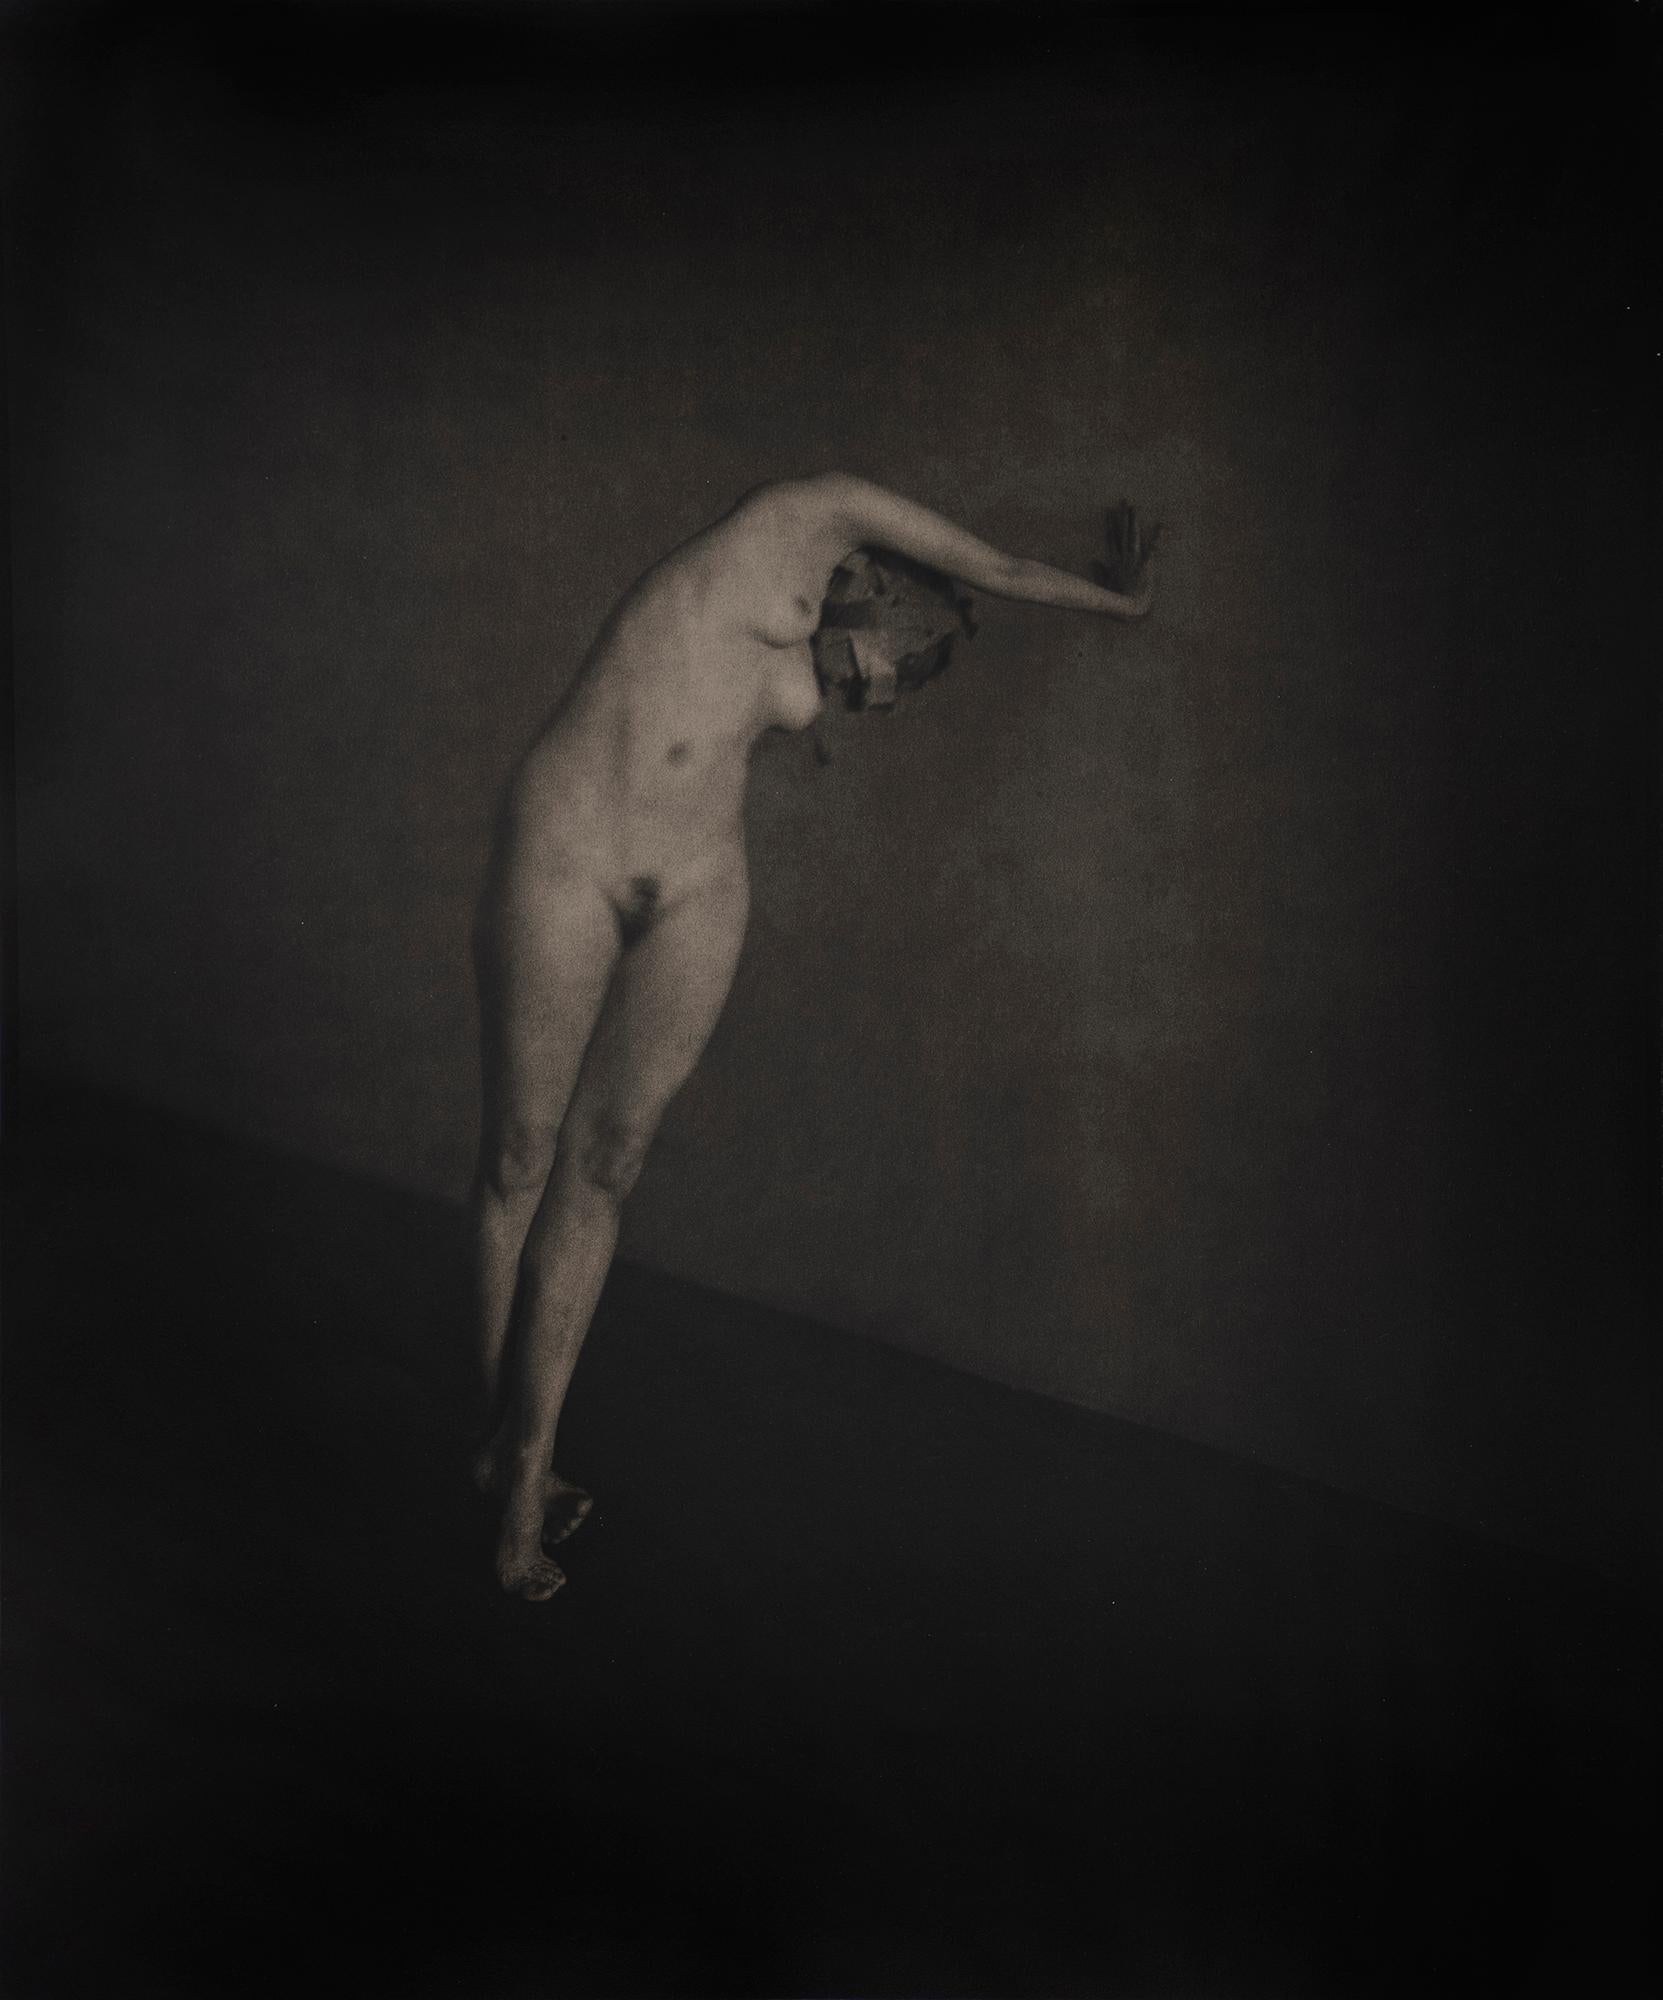 John Casado Nude Photograph – Ohne Titel 20233 - Lith-Silber-Gelatinesilberdruck - weiblicher figurativer Akt